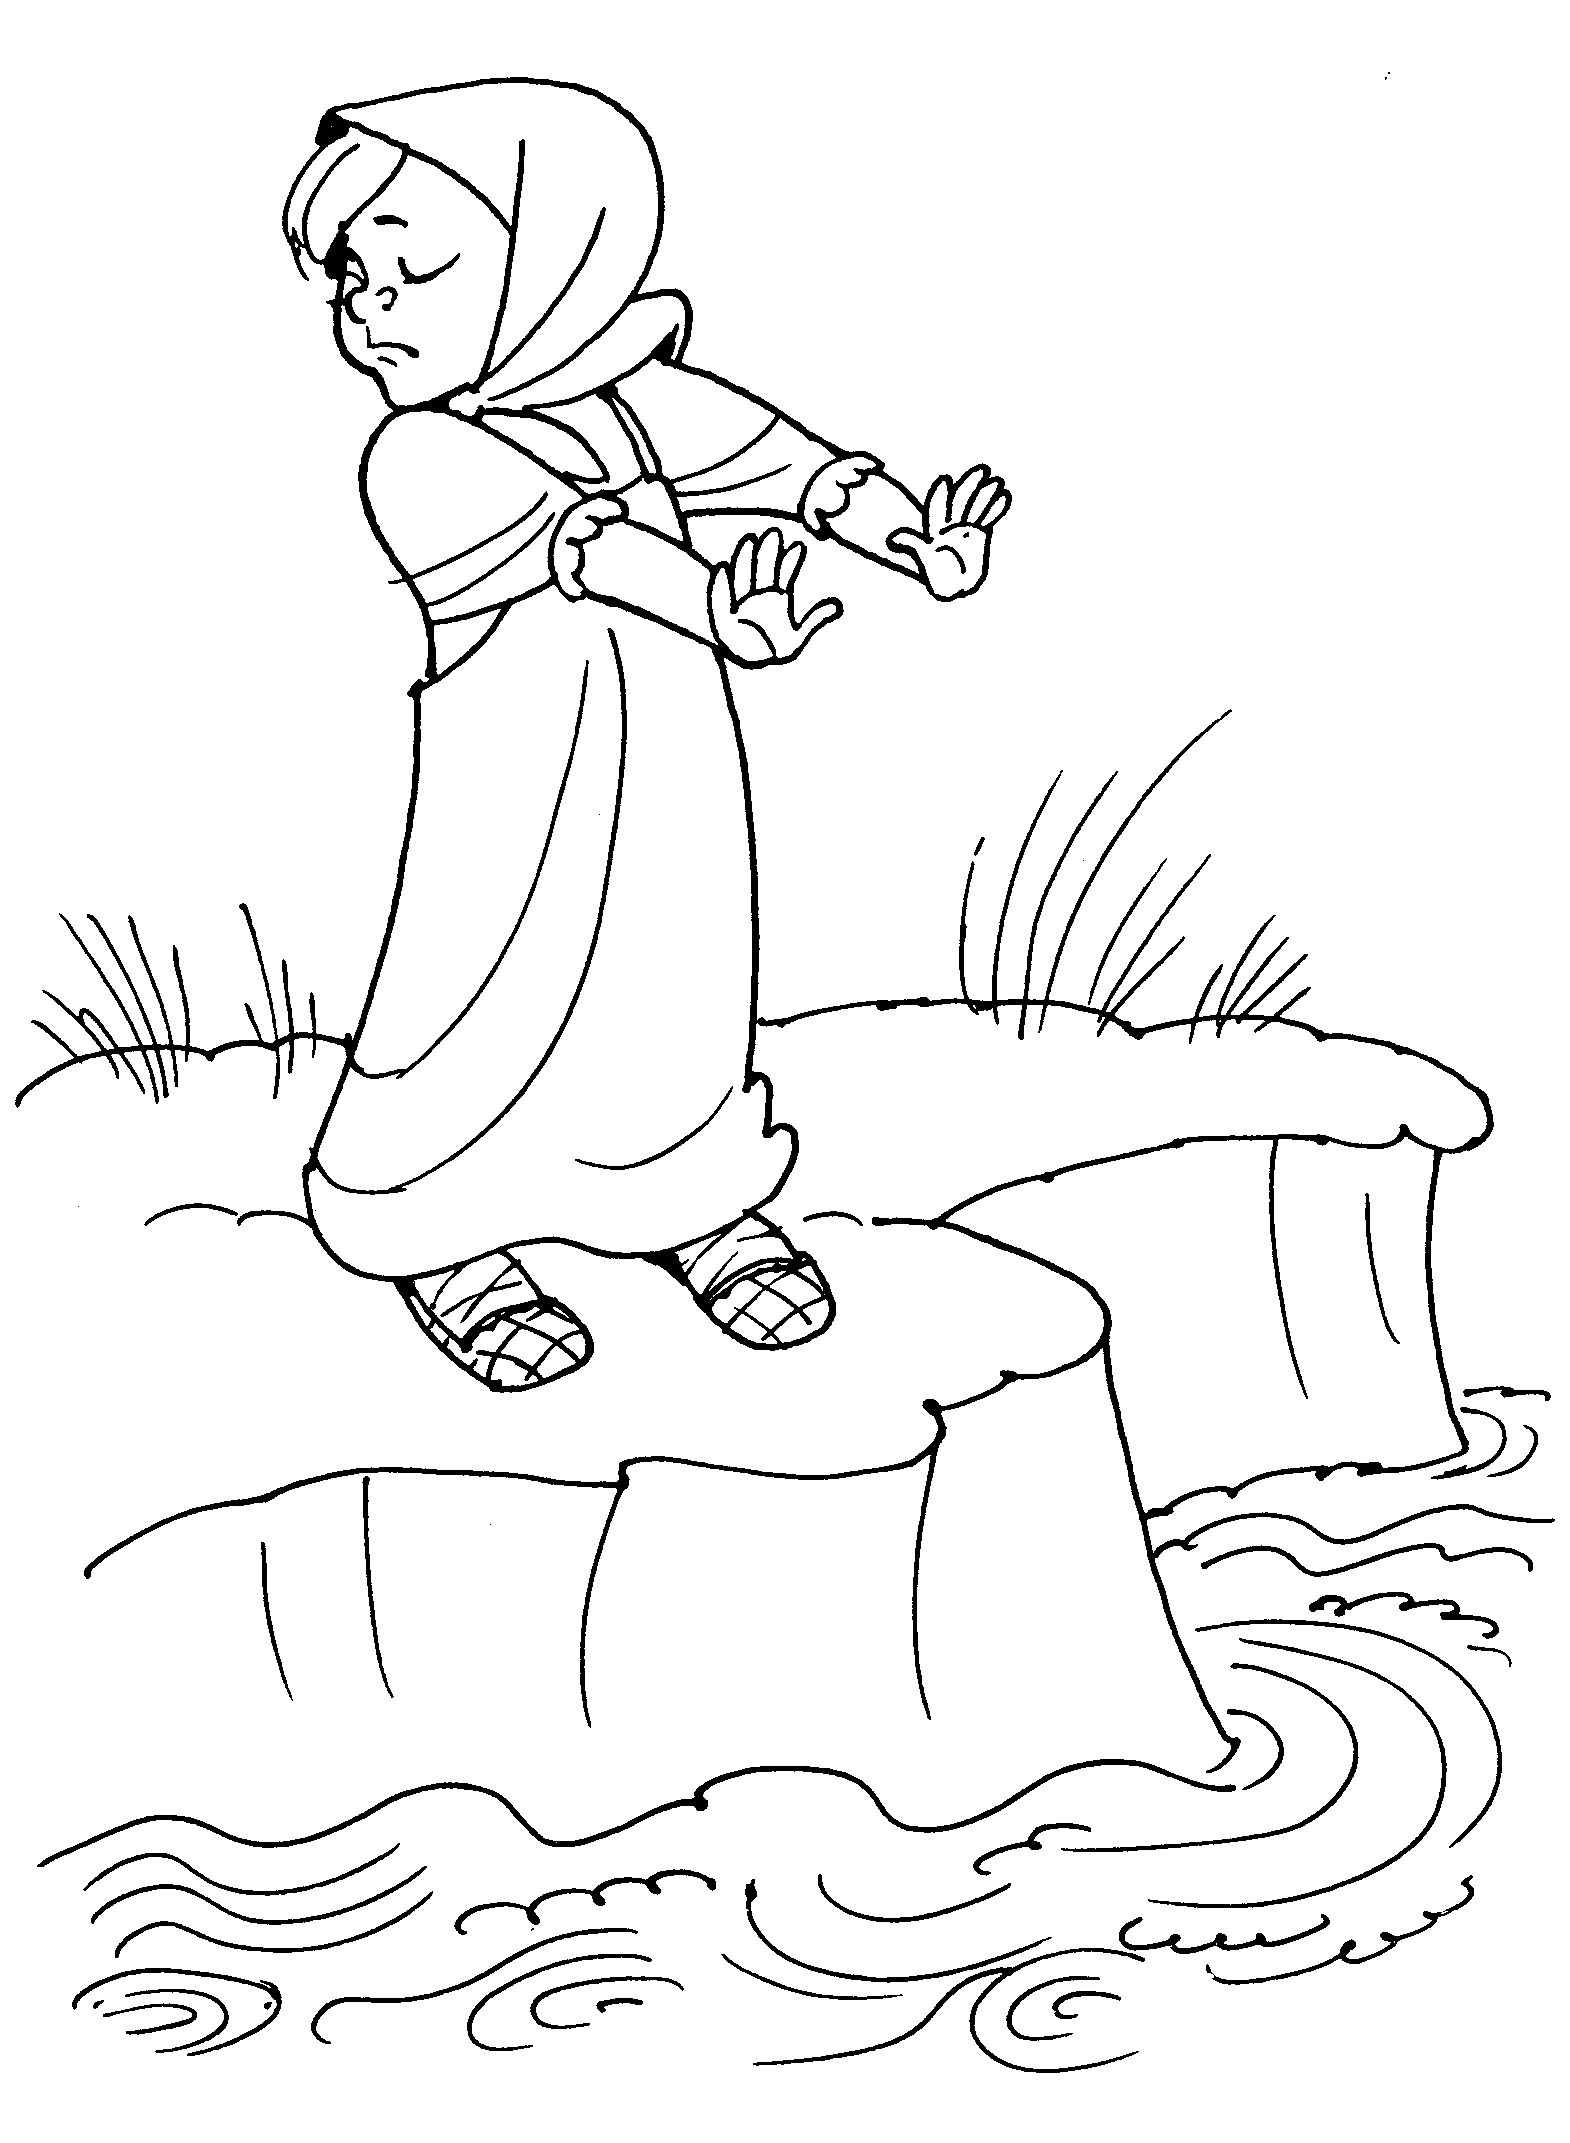 Розмальовки розмальовки до казки гуси лебеді сестра біля річки, гуси-лебеді казка